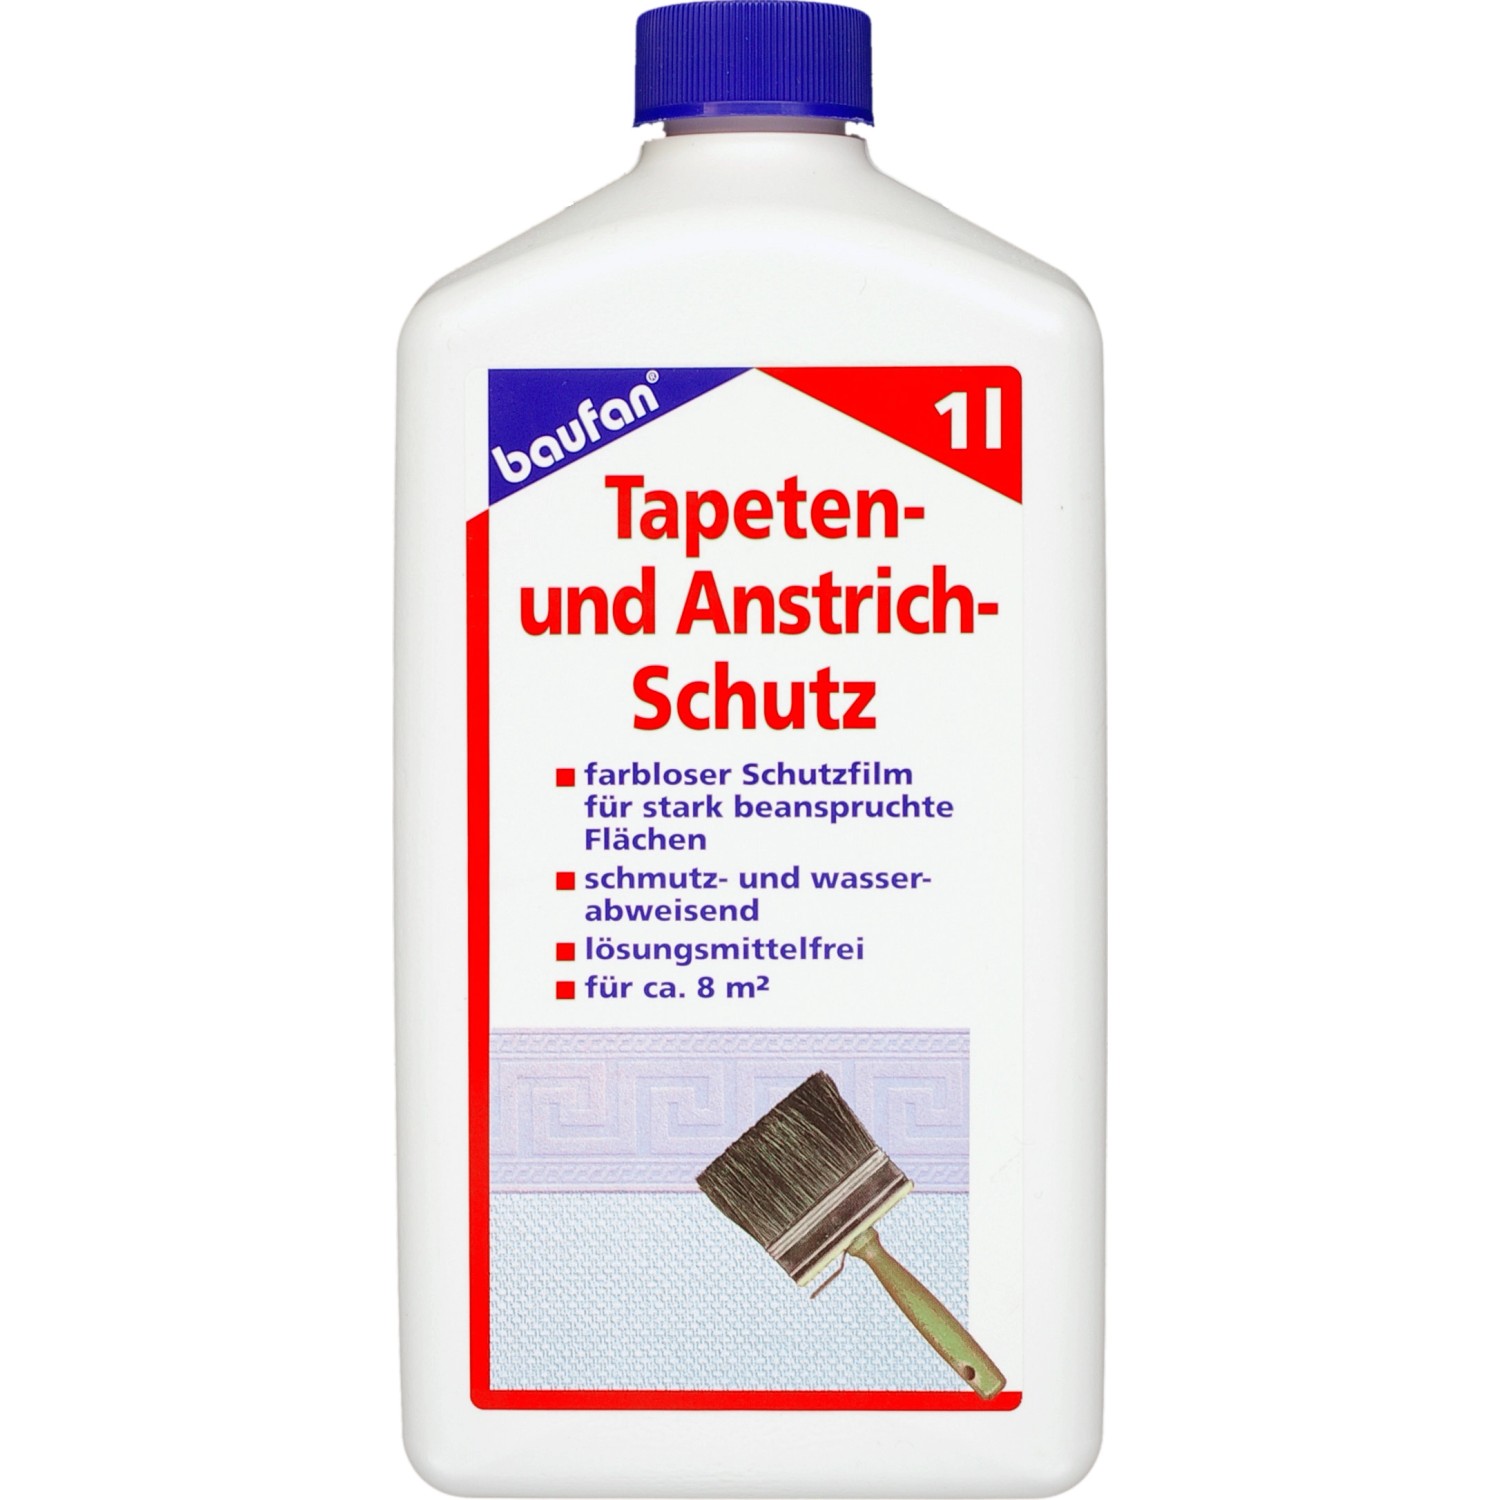 Baufan Tapeten- und Anstrich-Schutz 1 l